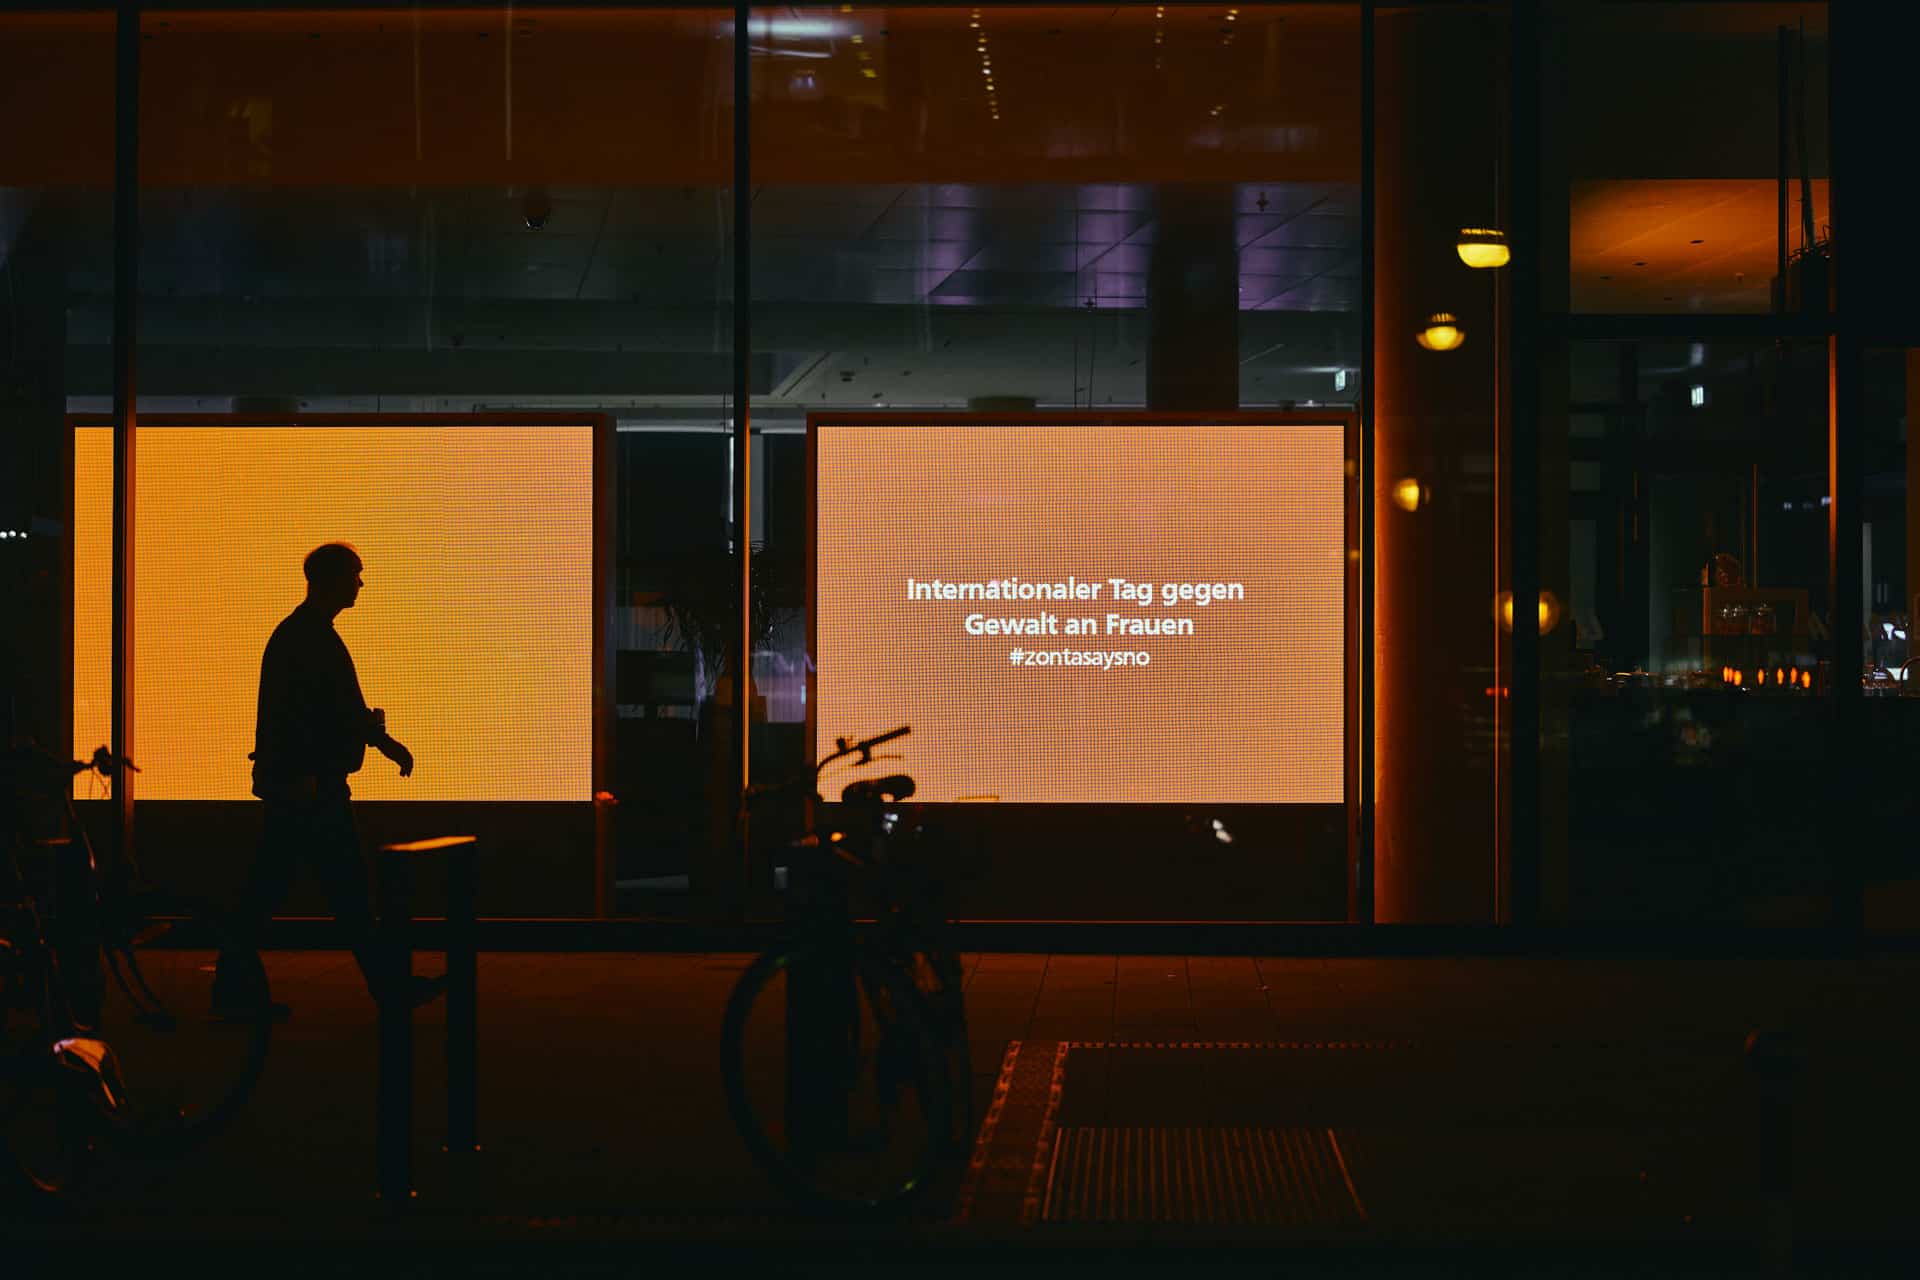 Mann geht vor einem Schaufenster bei Nacht. Displays sind orange und auf einem Steht: Internationaler Tag gegen Gewalt an Frauen